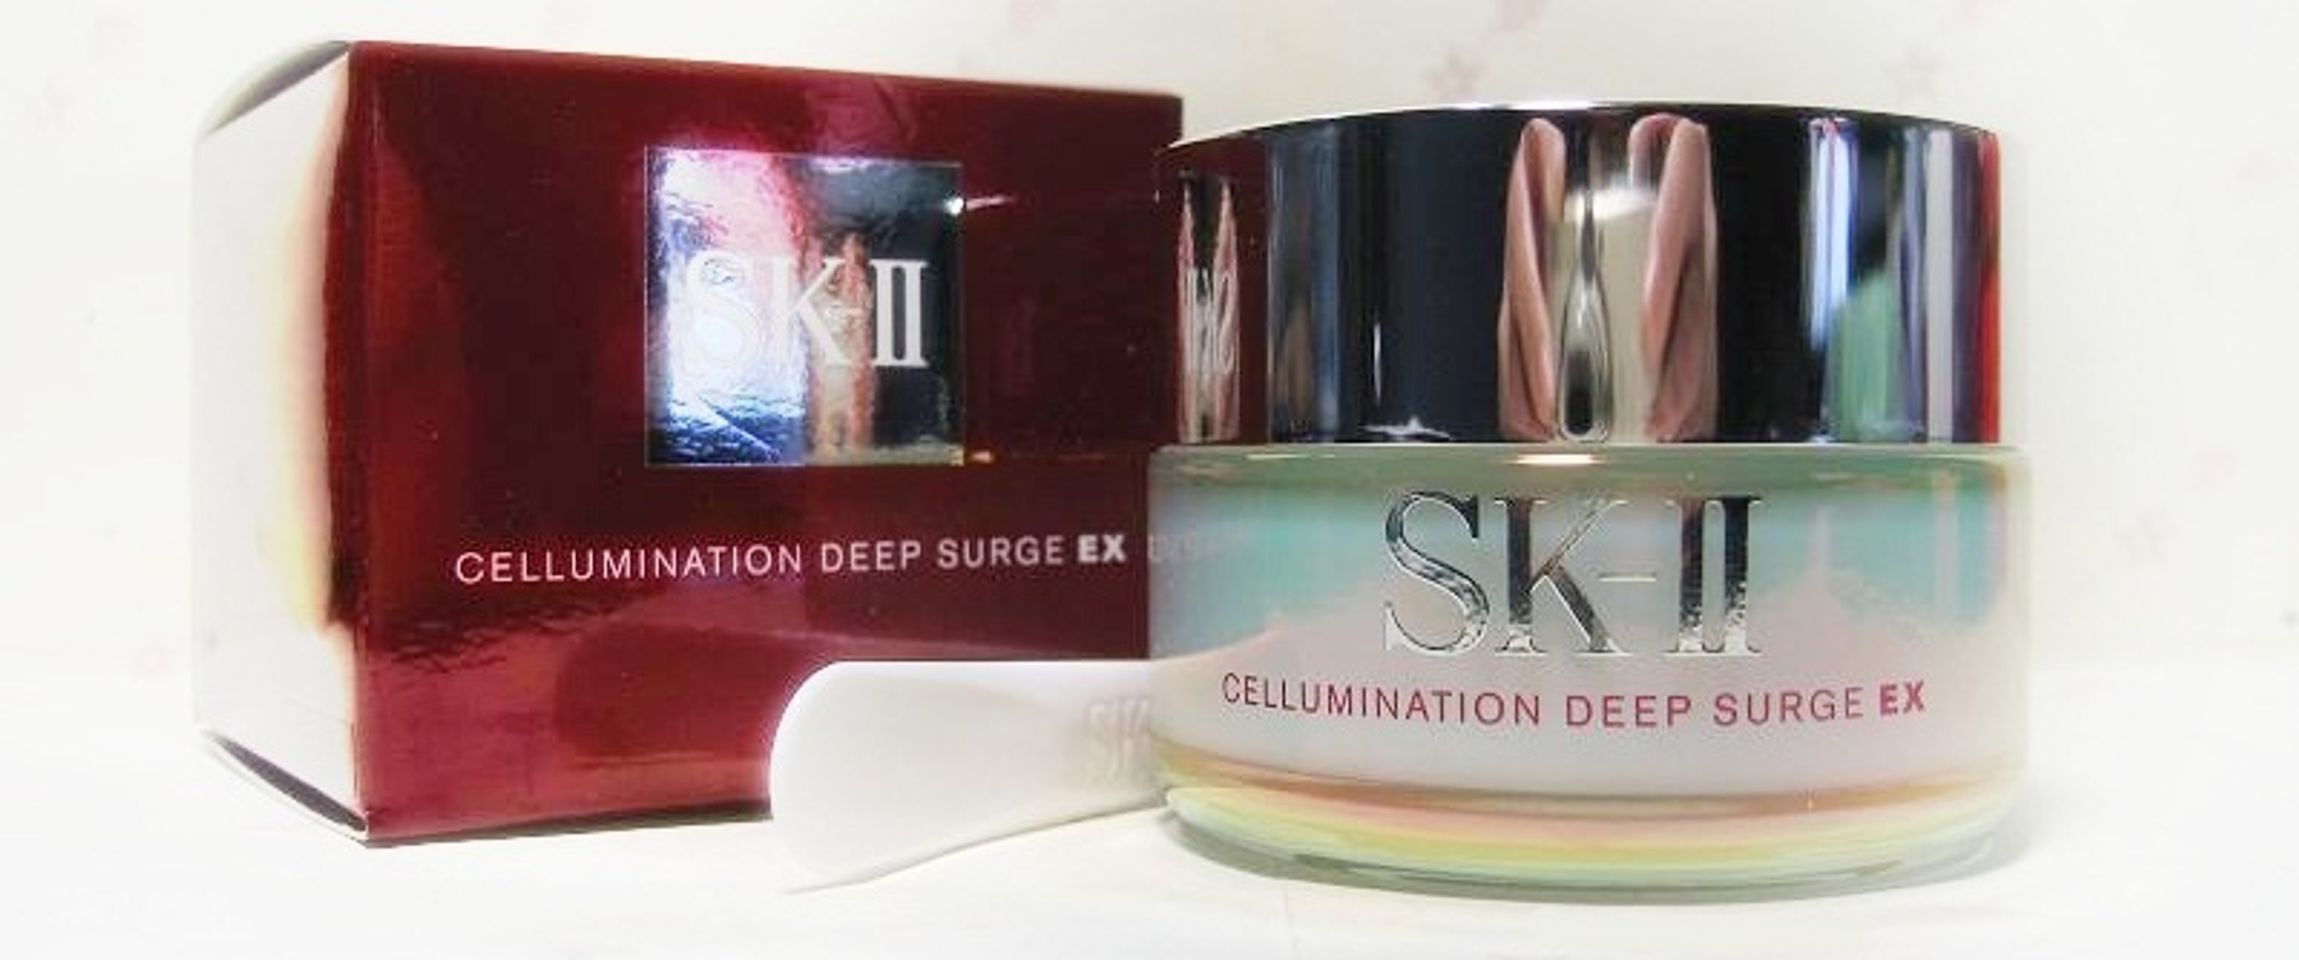 Kem dưỡng trắng da SK-II Cellumination Deep Surge EX giúp cung cấp độ ẩm sâu cho làn da mượt mà, trắng sáng